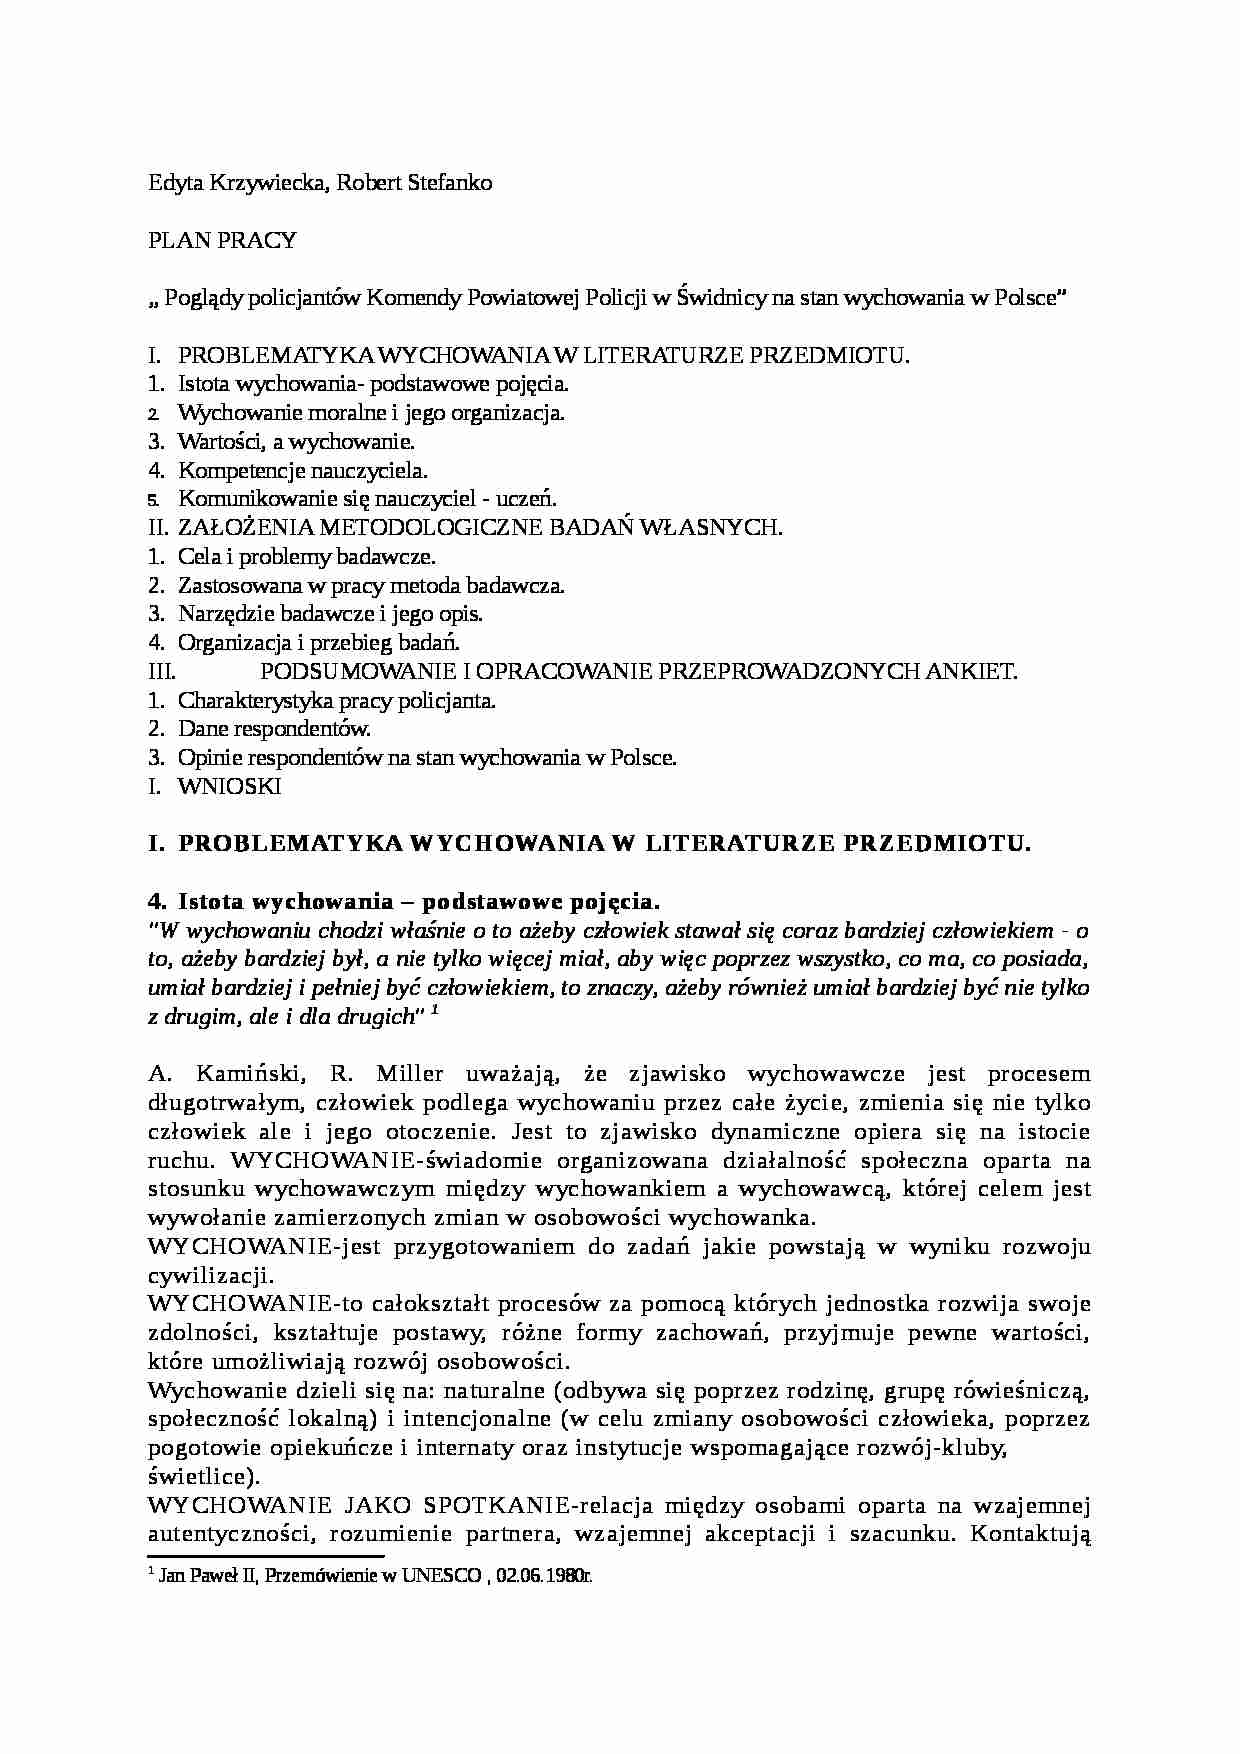 Poglądy policjantów Komendy Powiatowej Policji w Świdnicy na stan wychowania w Polsce- pedagogika - strona 1